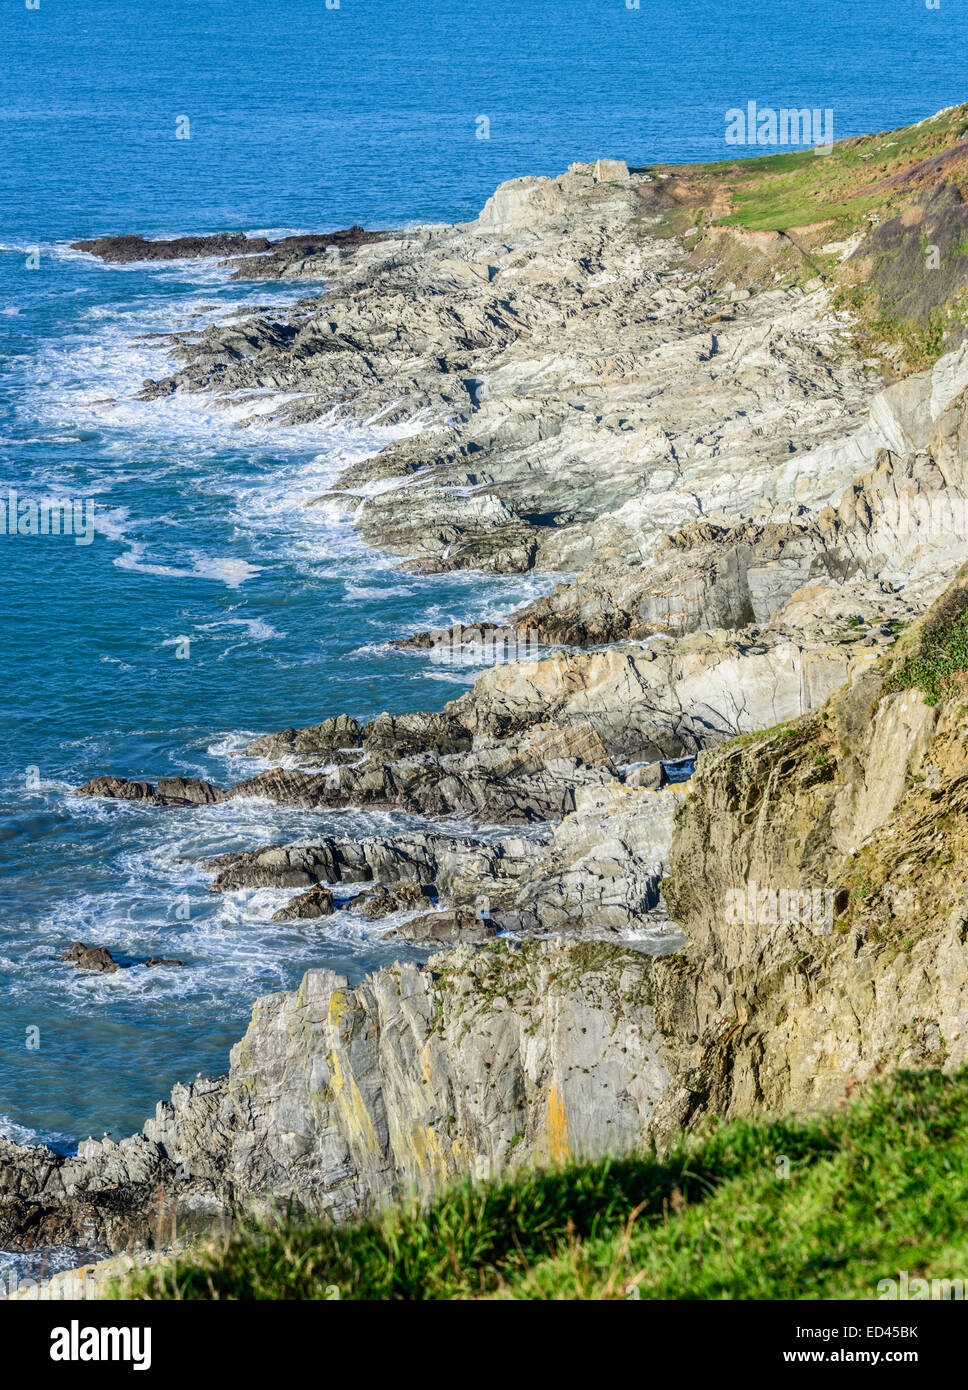 Costa rocosa al oeste de Rame Head en el sureste de Cornwall, Inglaterra Foto de stock